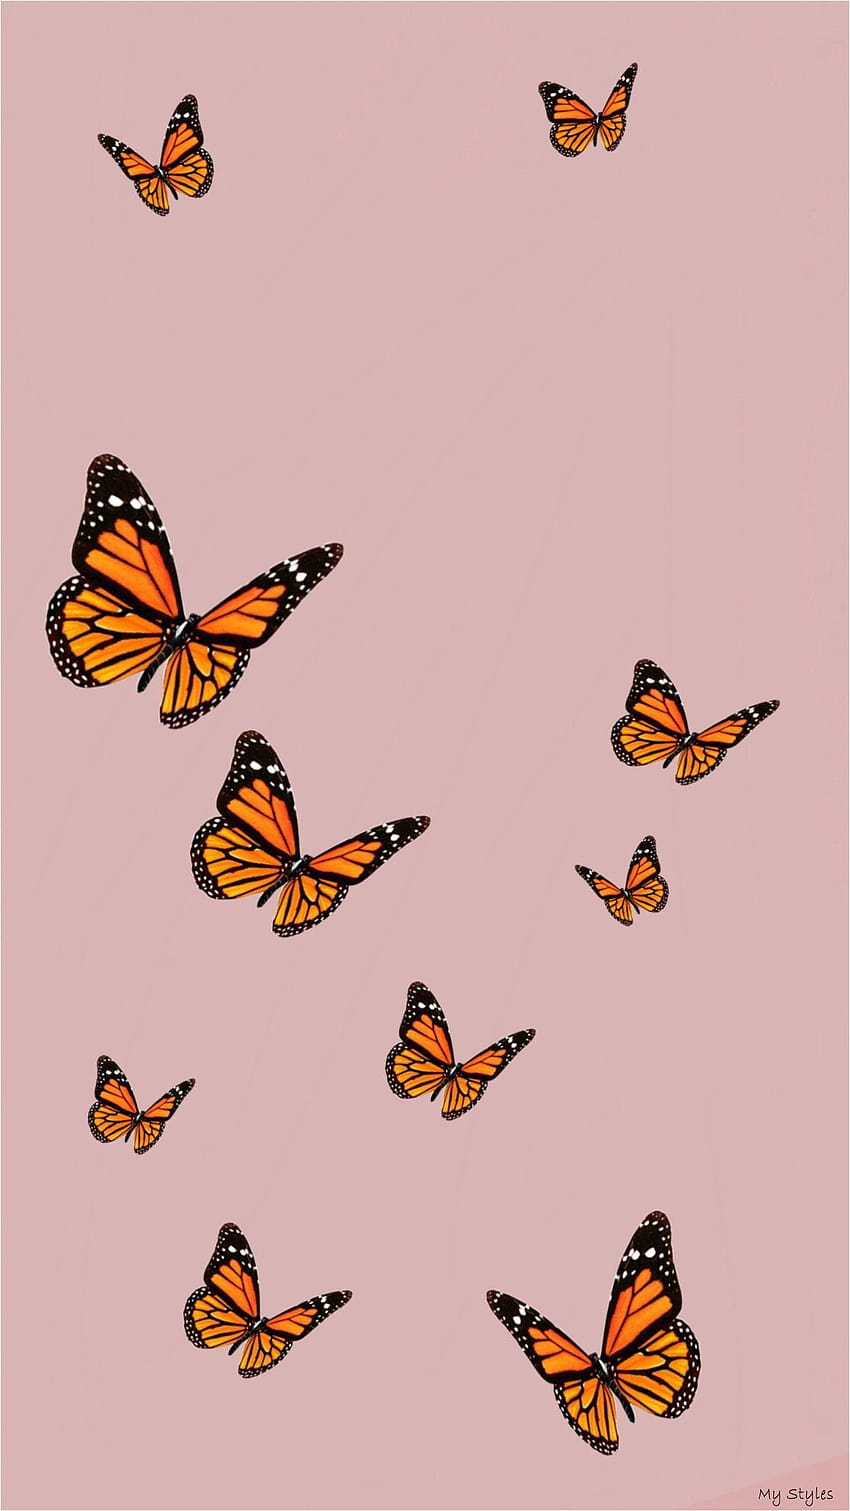 No title) in 2020, butterfly aesthetics HD phone wallpaper | Pxfuel